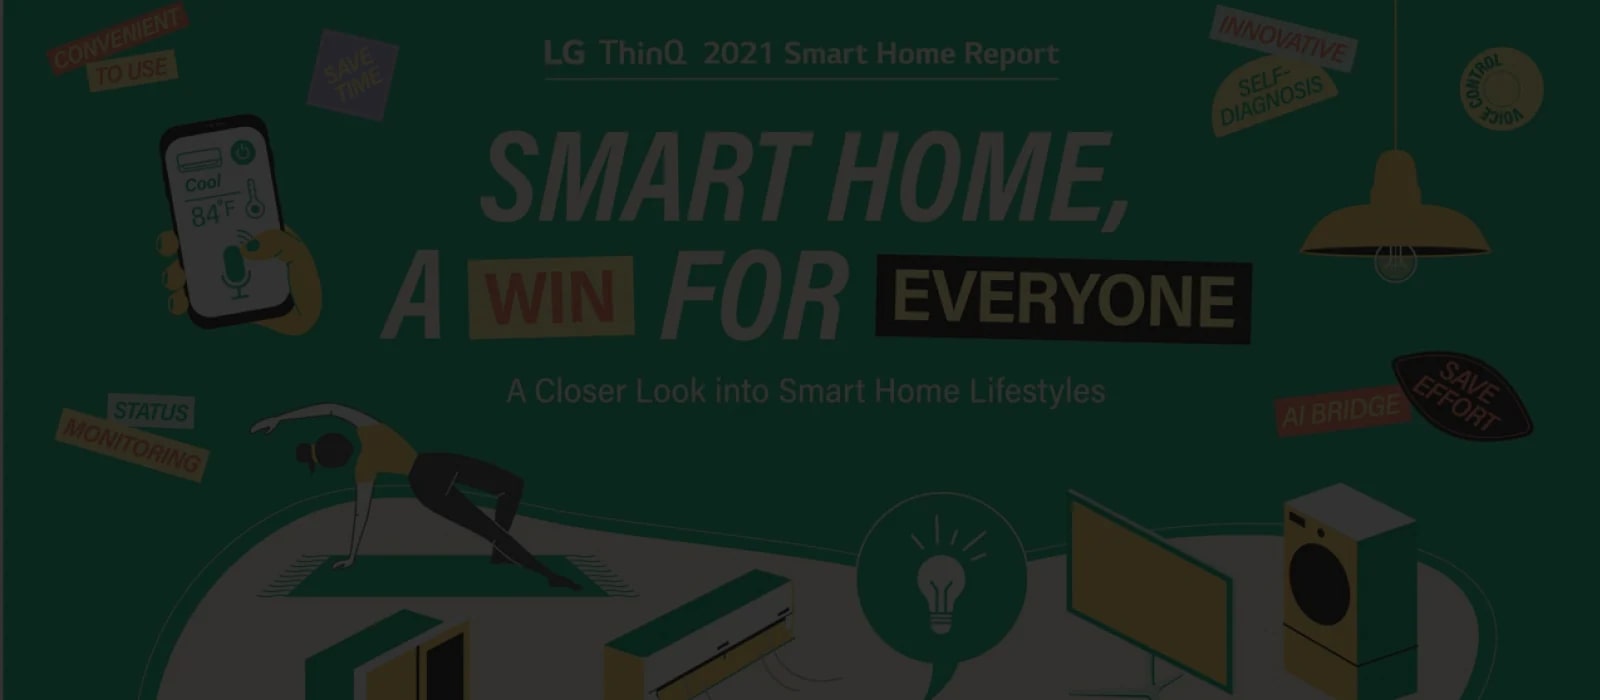 Illustration d’électroménager intelligent avec le texte « Smart home, a win for everyone »